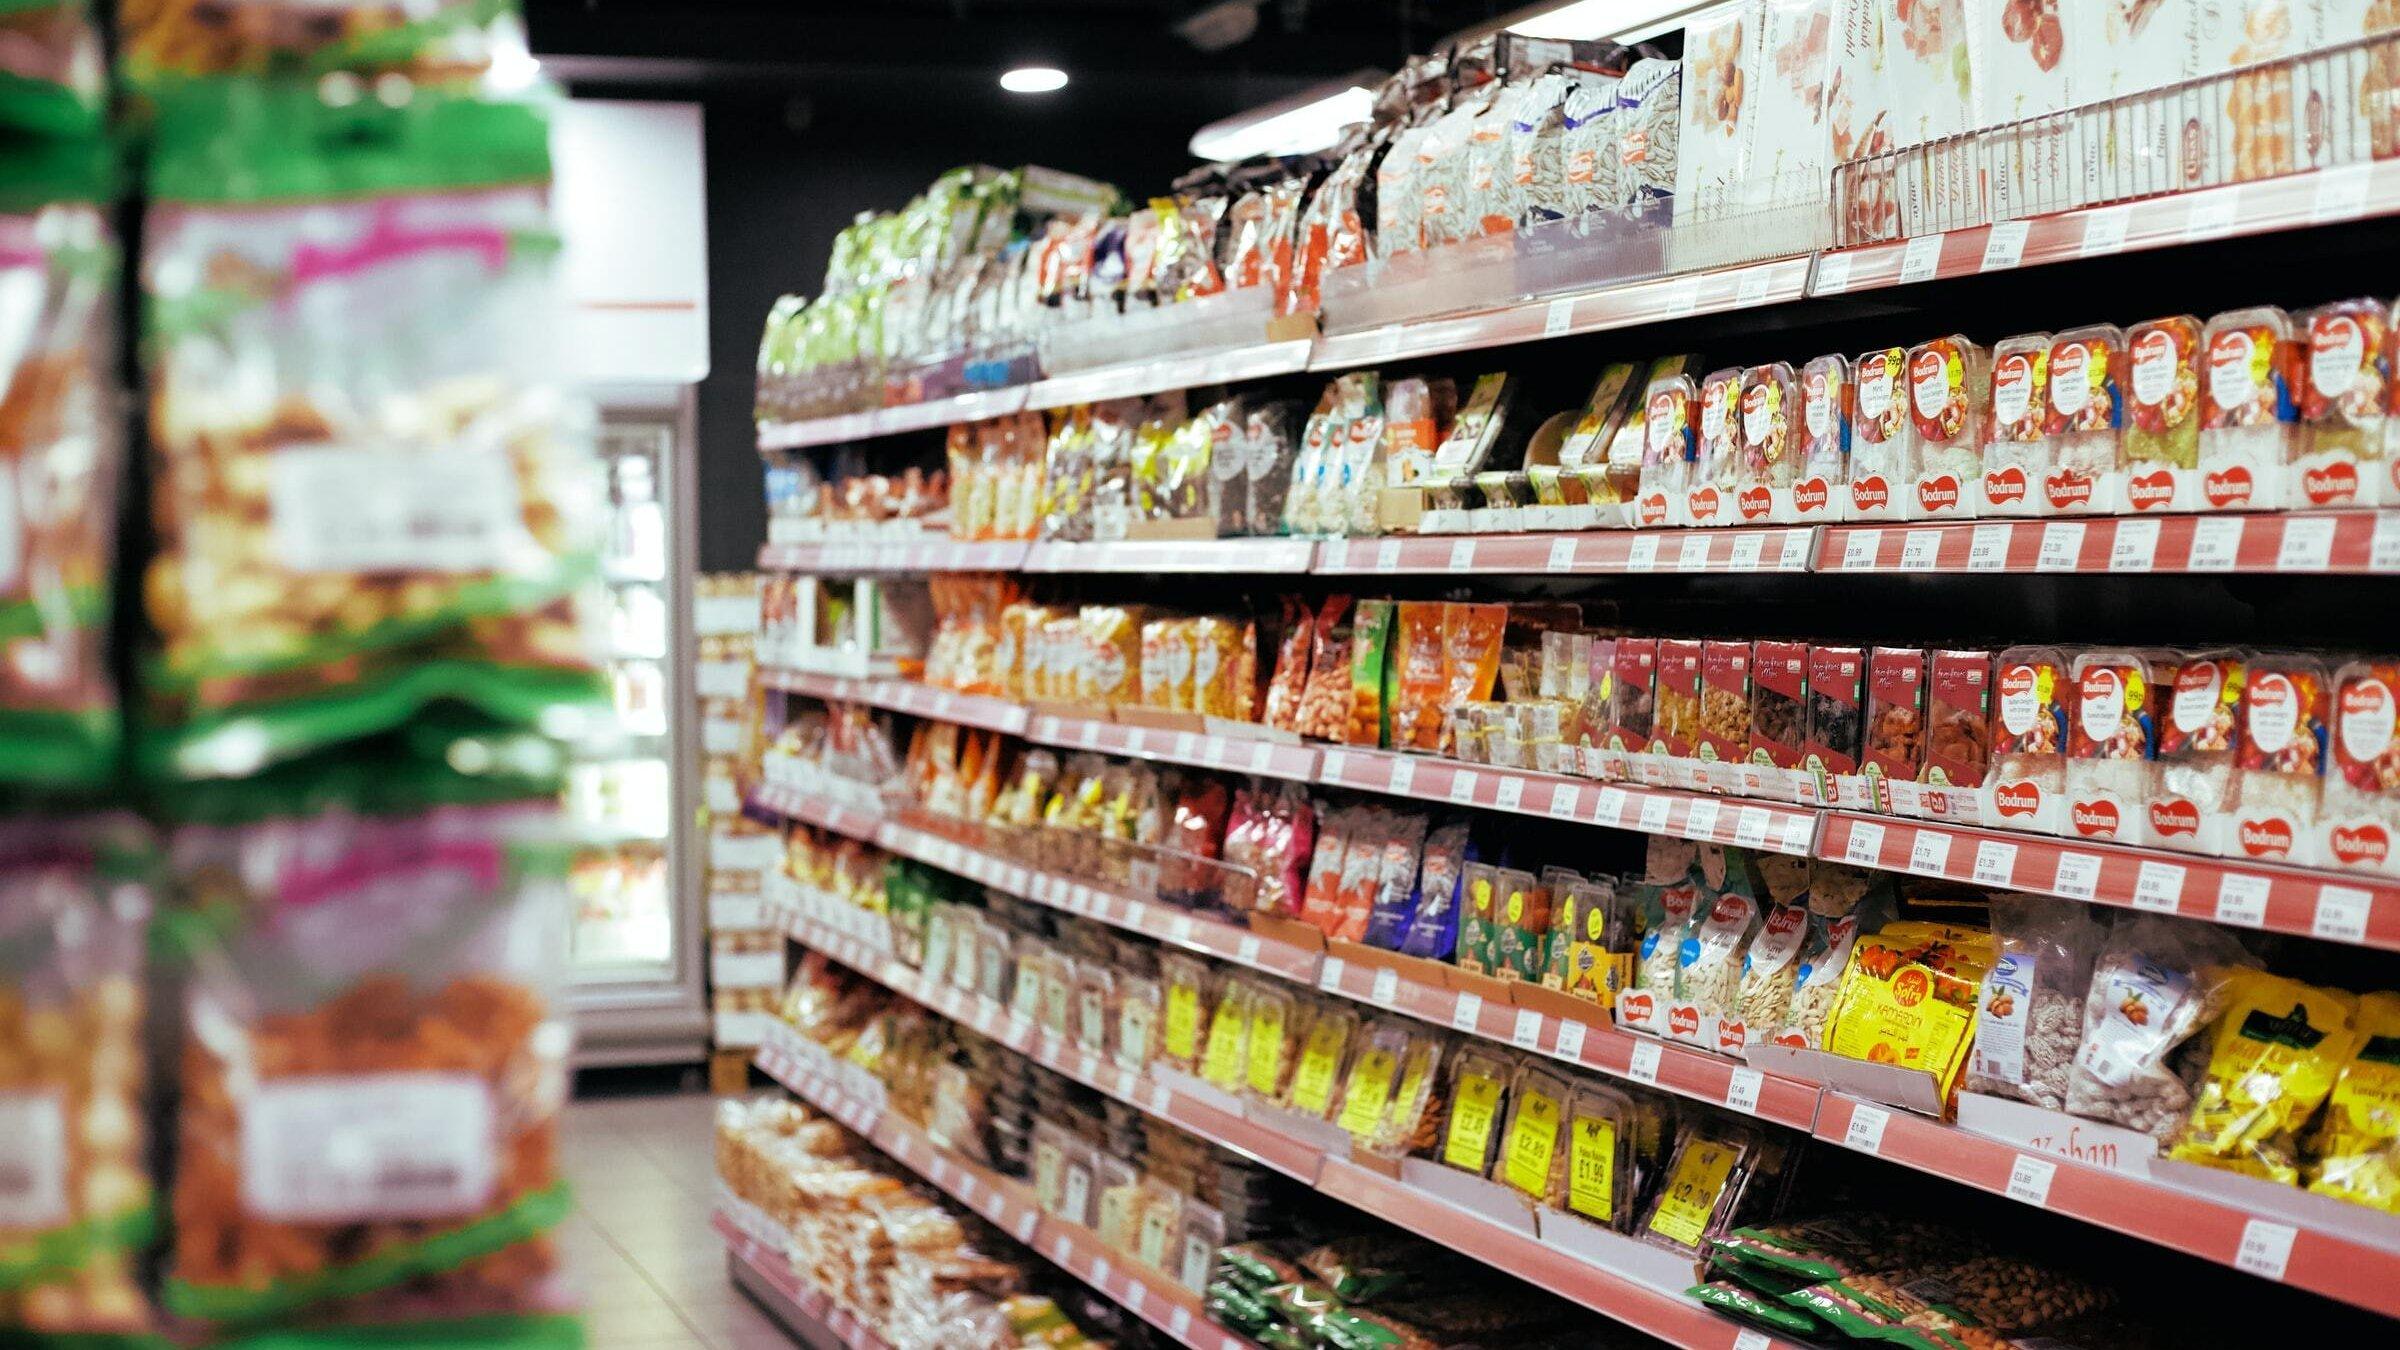 Viele bunte Lebensmittel-Verpackungen stehen in einem Regal in einem Supermarkt.